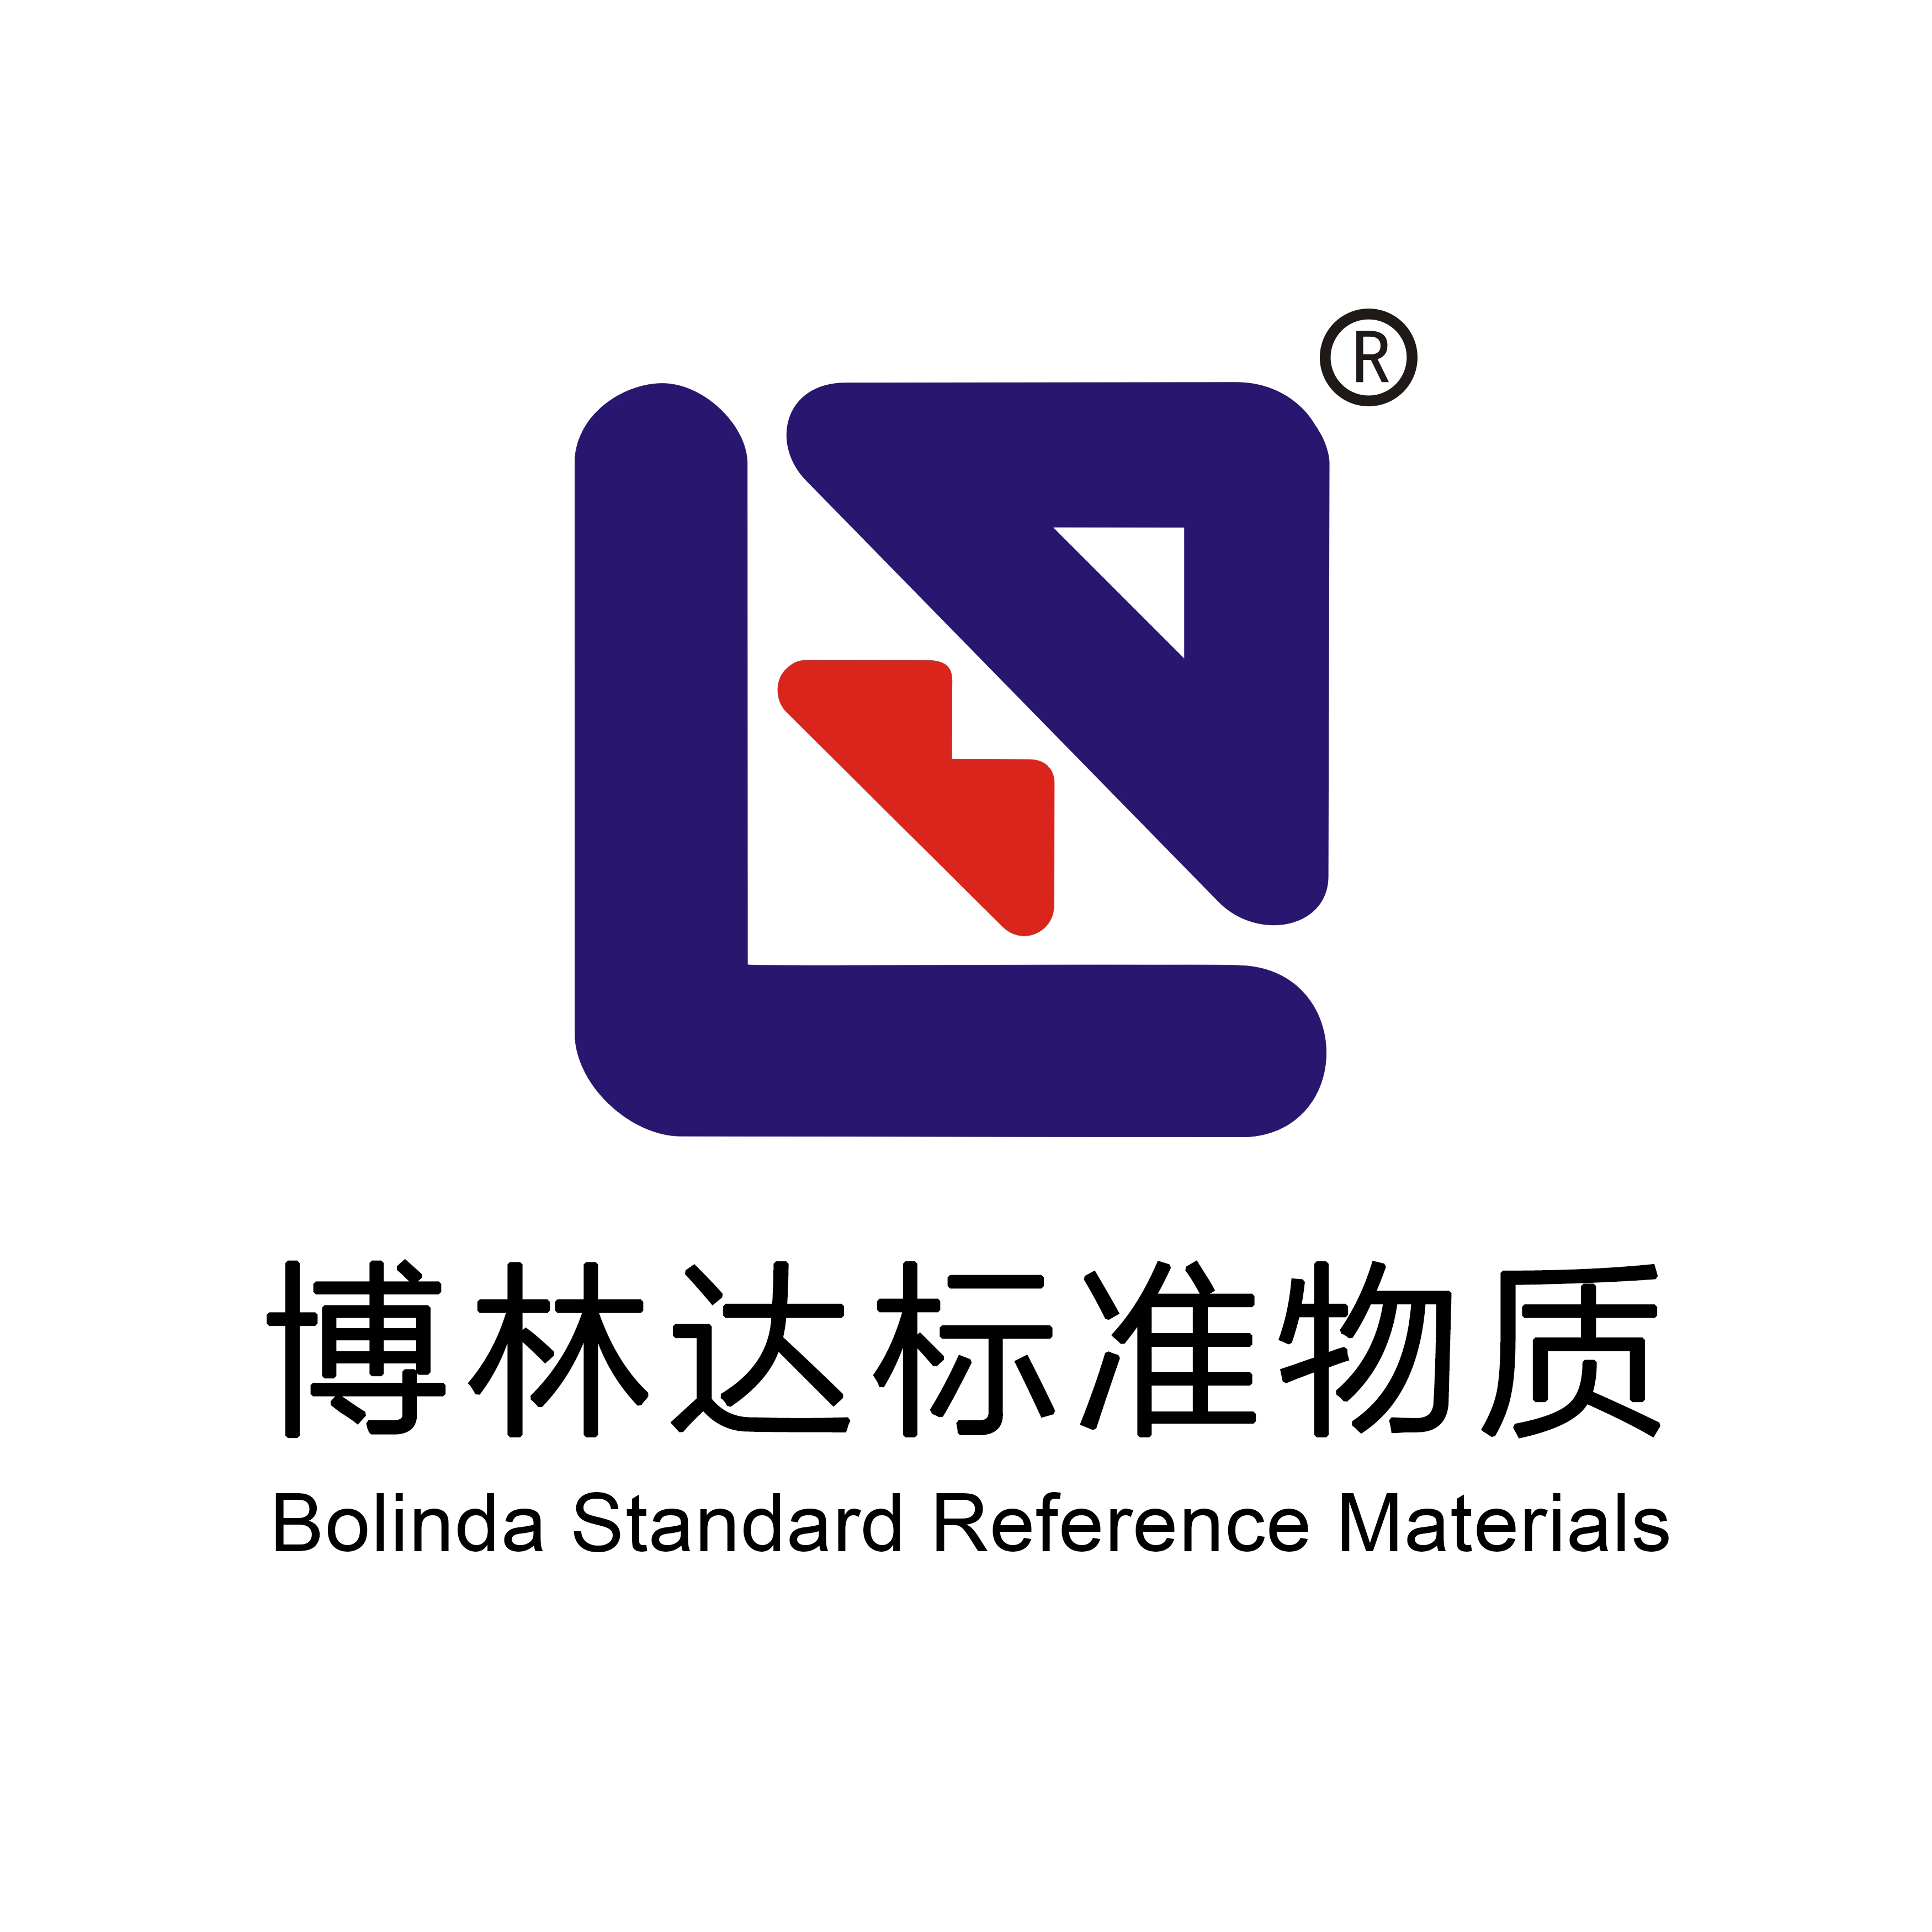 单元素标准溶液 - 【博林达直营店】博林达标准物质商城 | 国家标准物质网